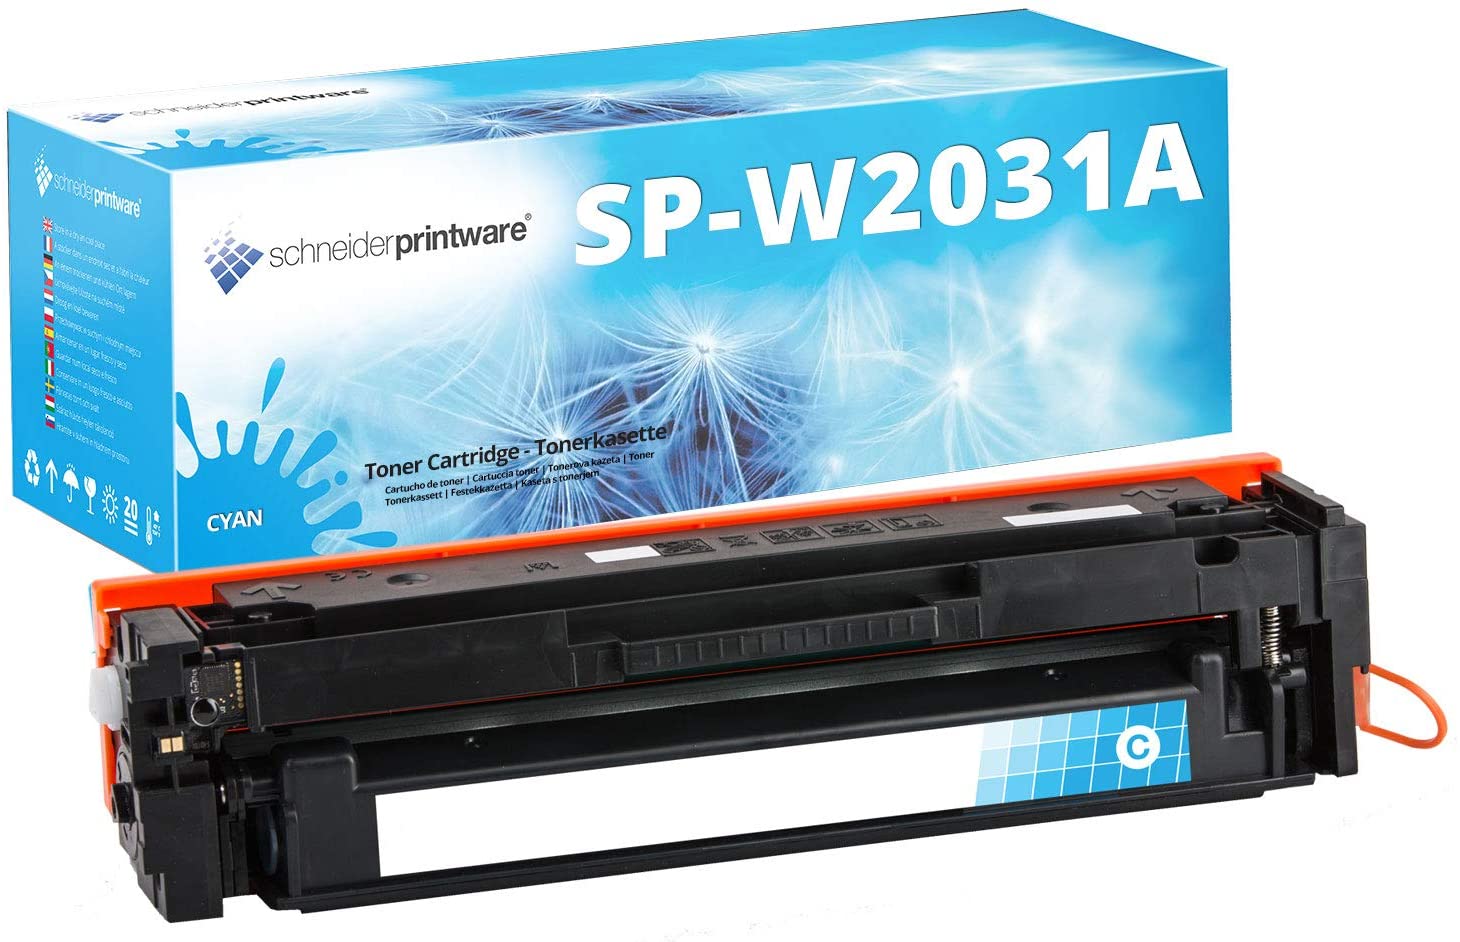 Schneiderprintware Toner ersetzt HP 415A W2031A Cyan